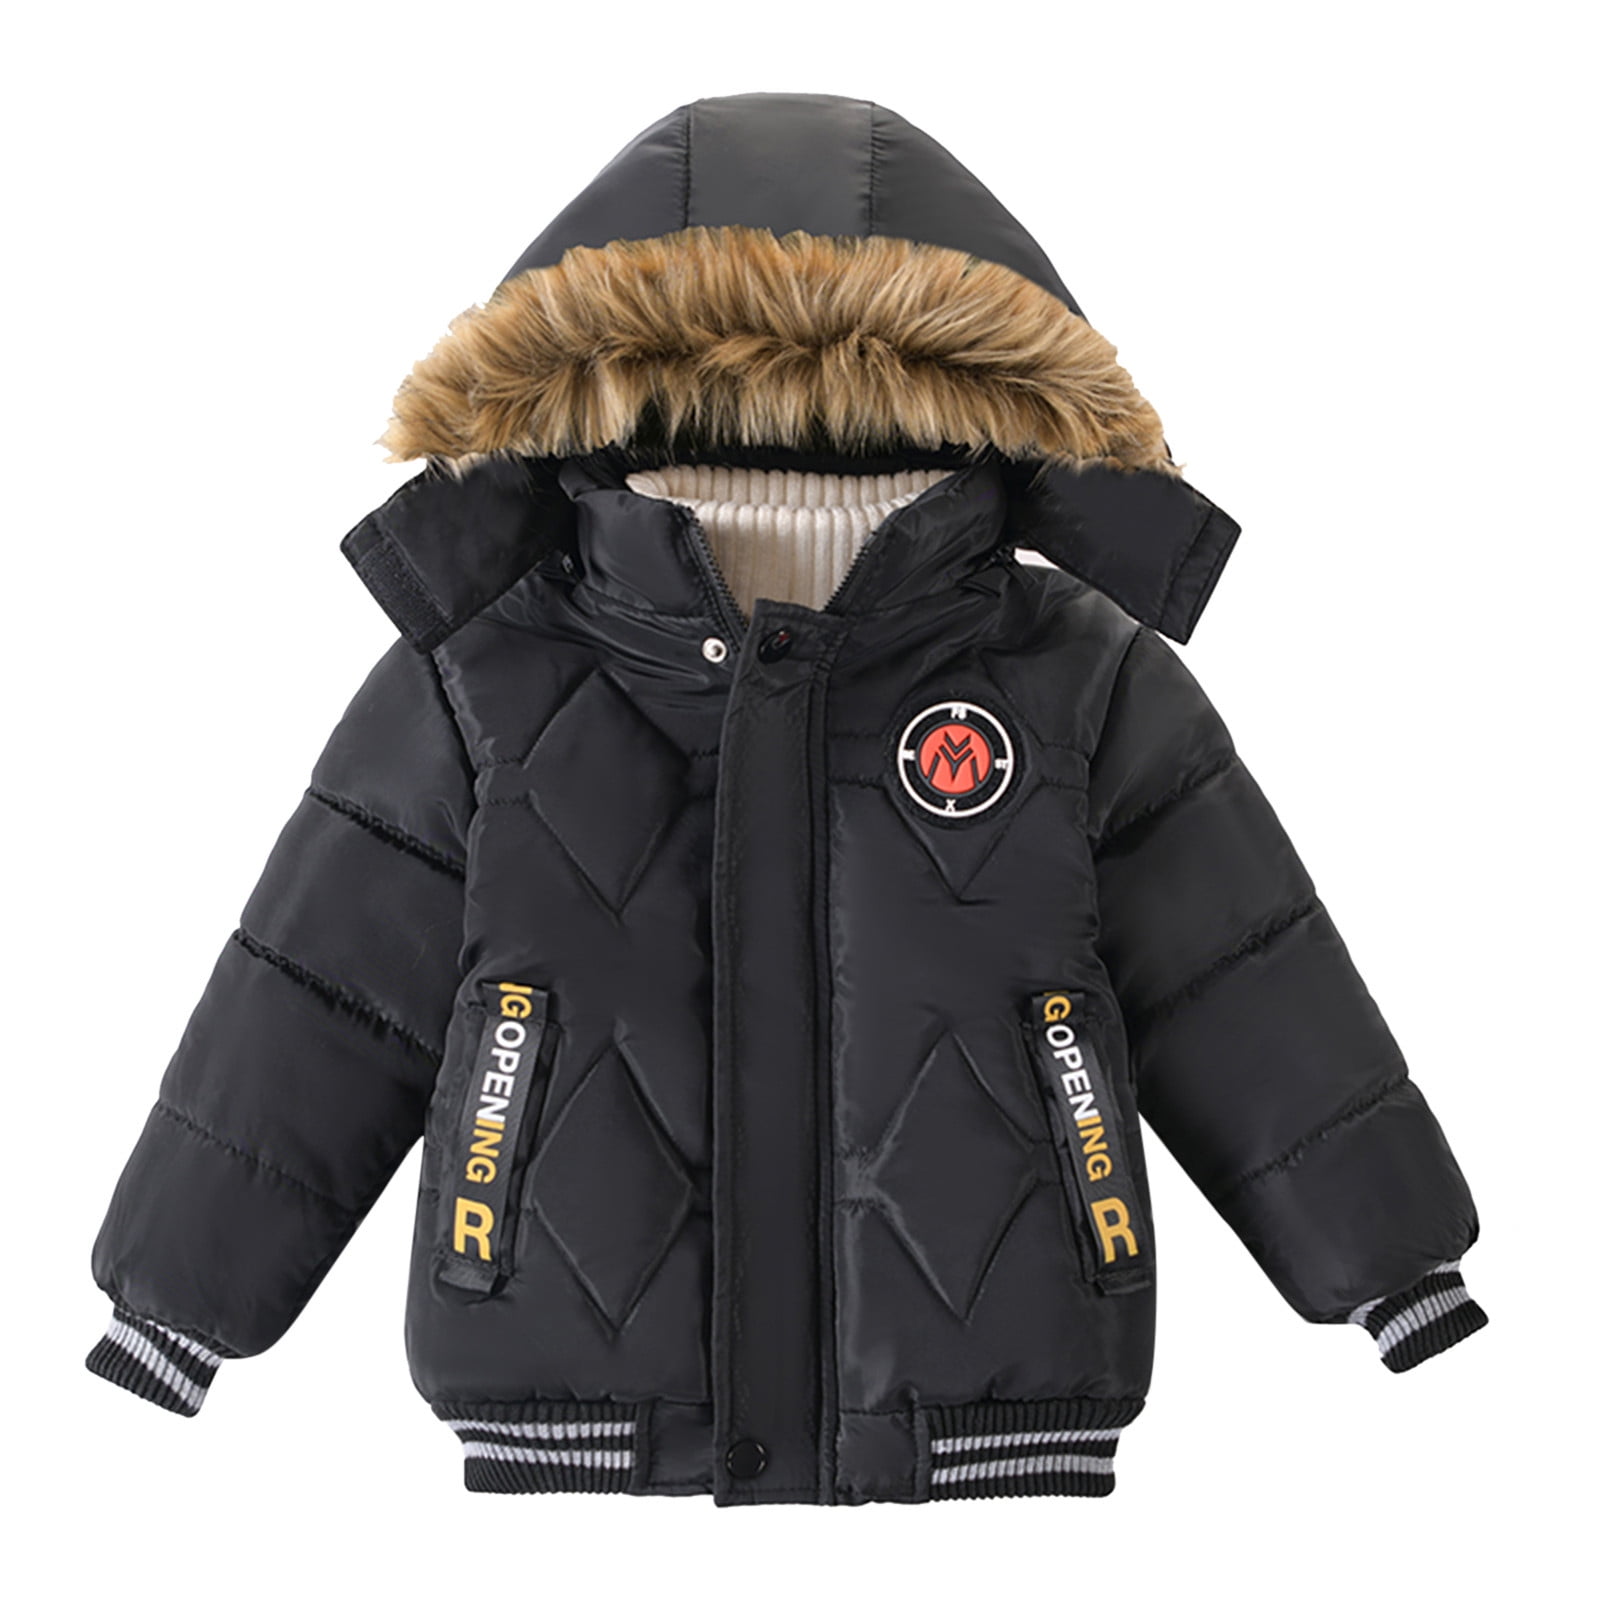 JDEFEG Toddler Jackets Boys 5T Children Winter Boy Jacket Coat Hooded ...